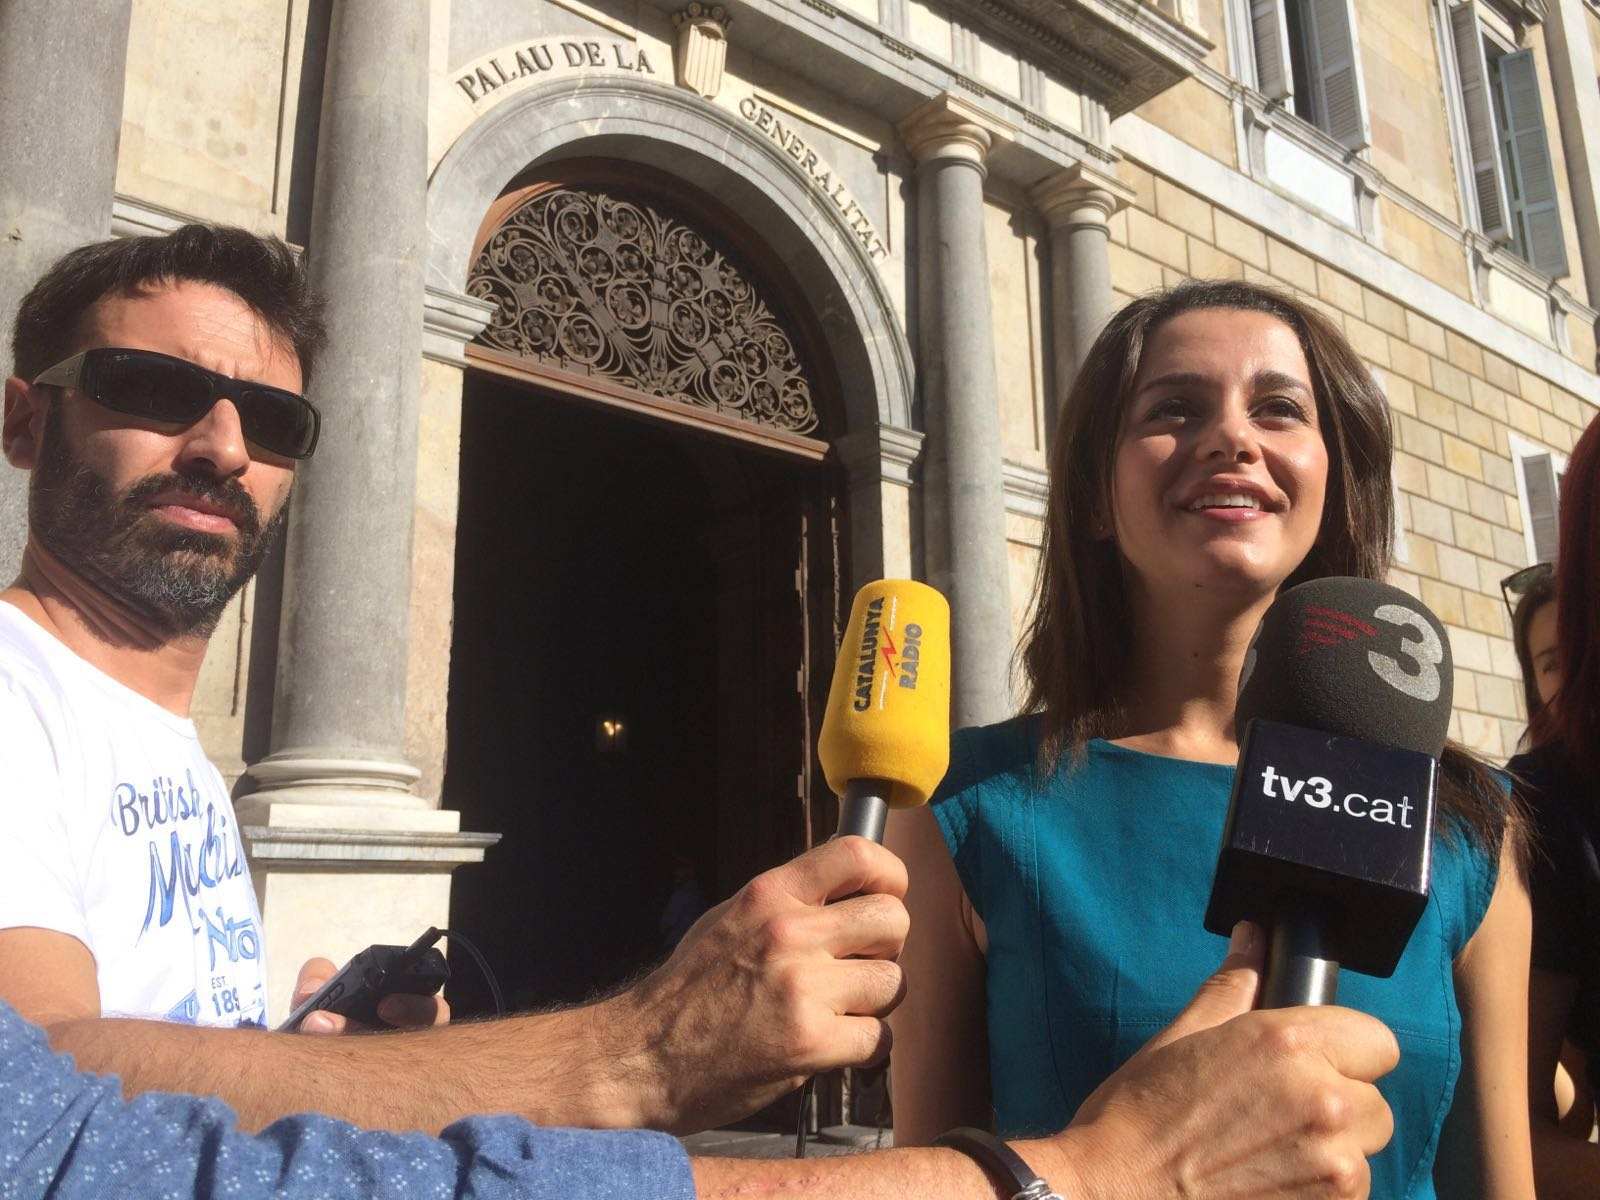 Arrimadas vaticina que la Diada demostrará que el independentismo pierde apoyo